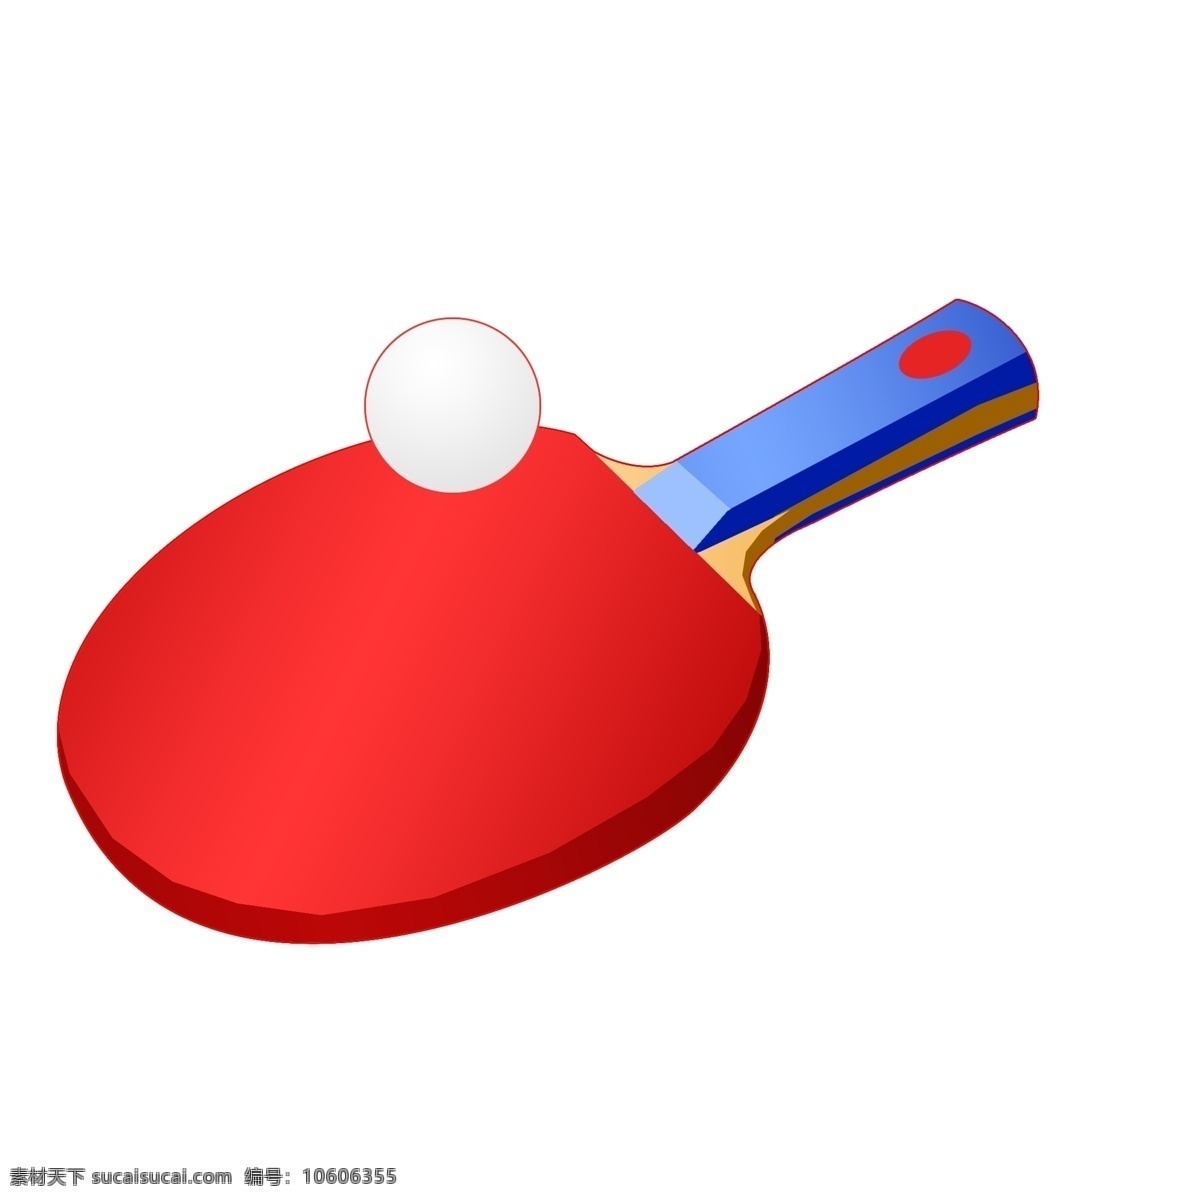 红色 运动 乒乓球拍 红色的球拍 卡通的球拍 运动的球拍 乒乓球球拍 卡通乒乓球拍 运动乒乓球